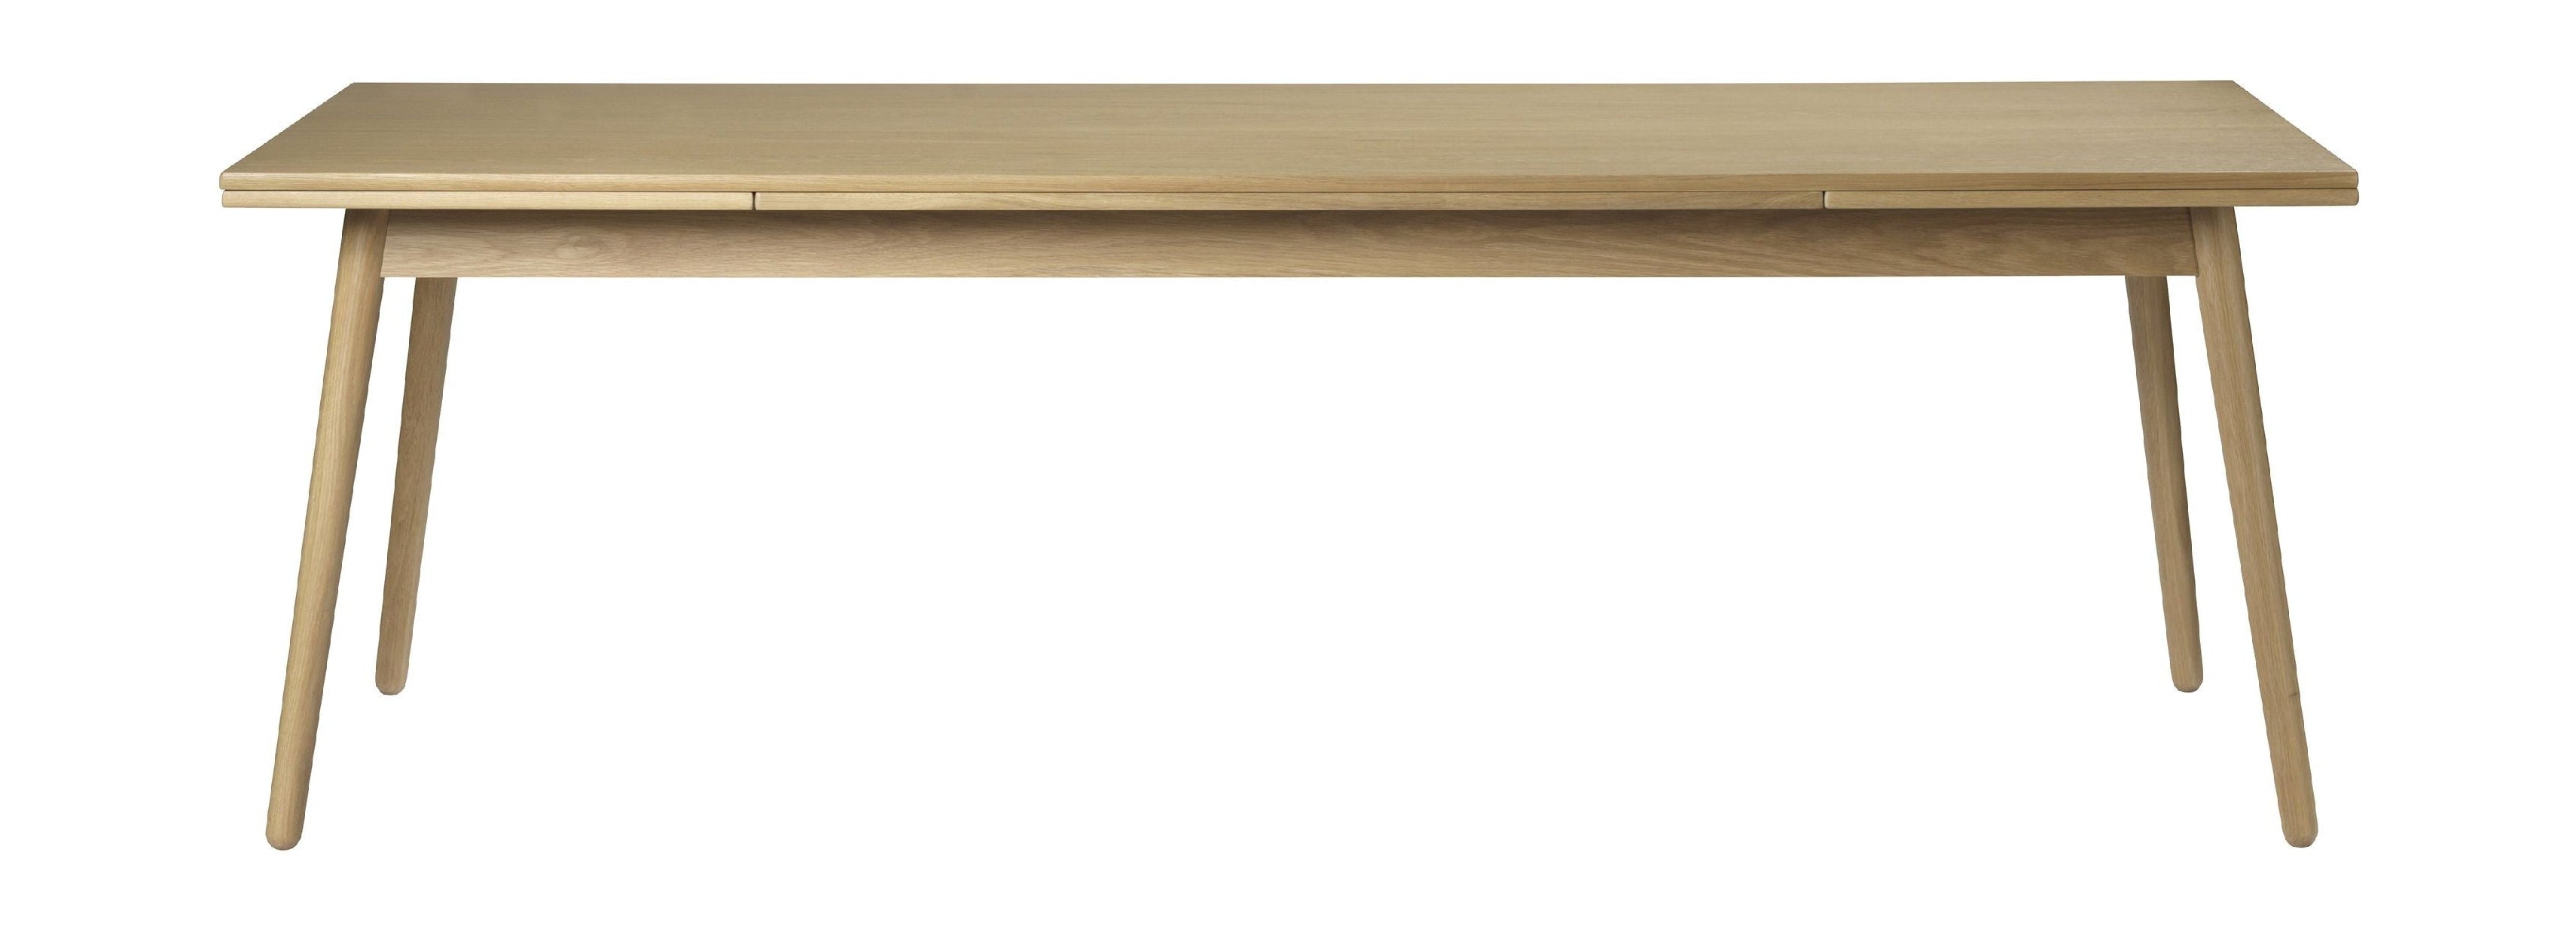 Fdb Møbler C35 c matbord med holländska drag ut